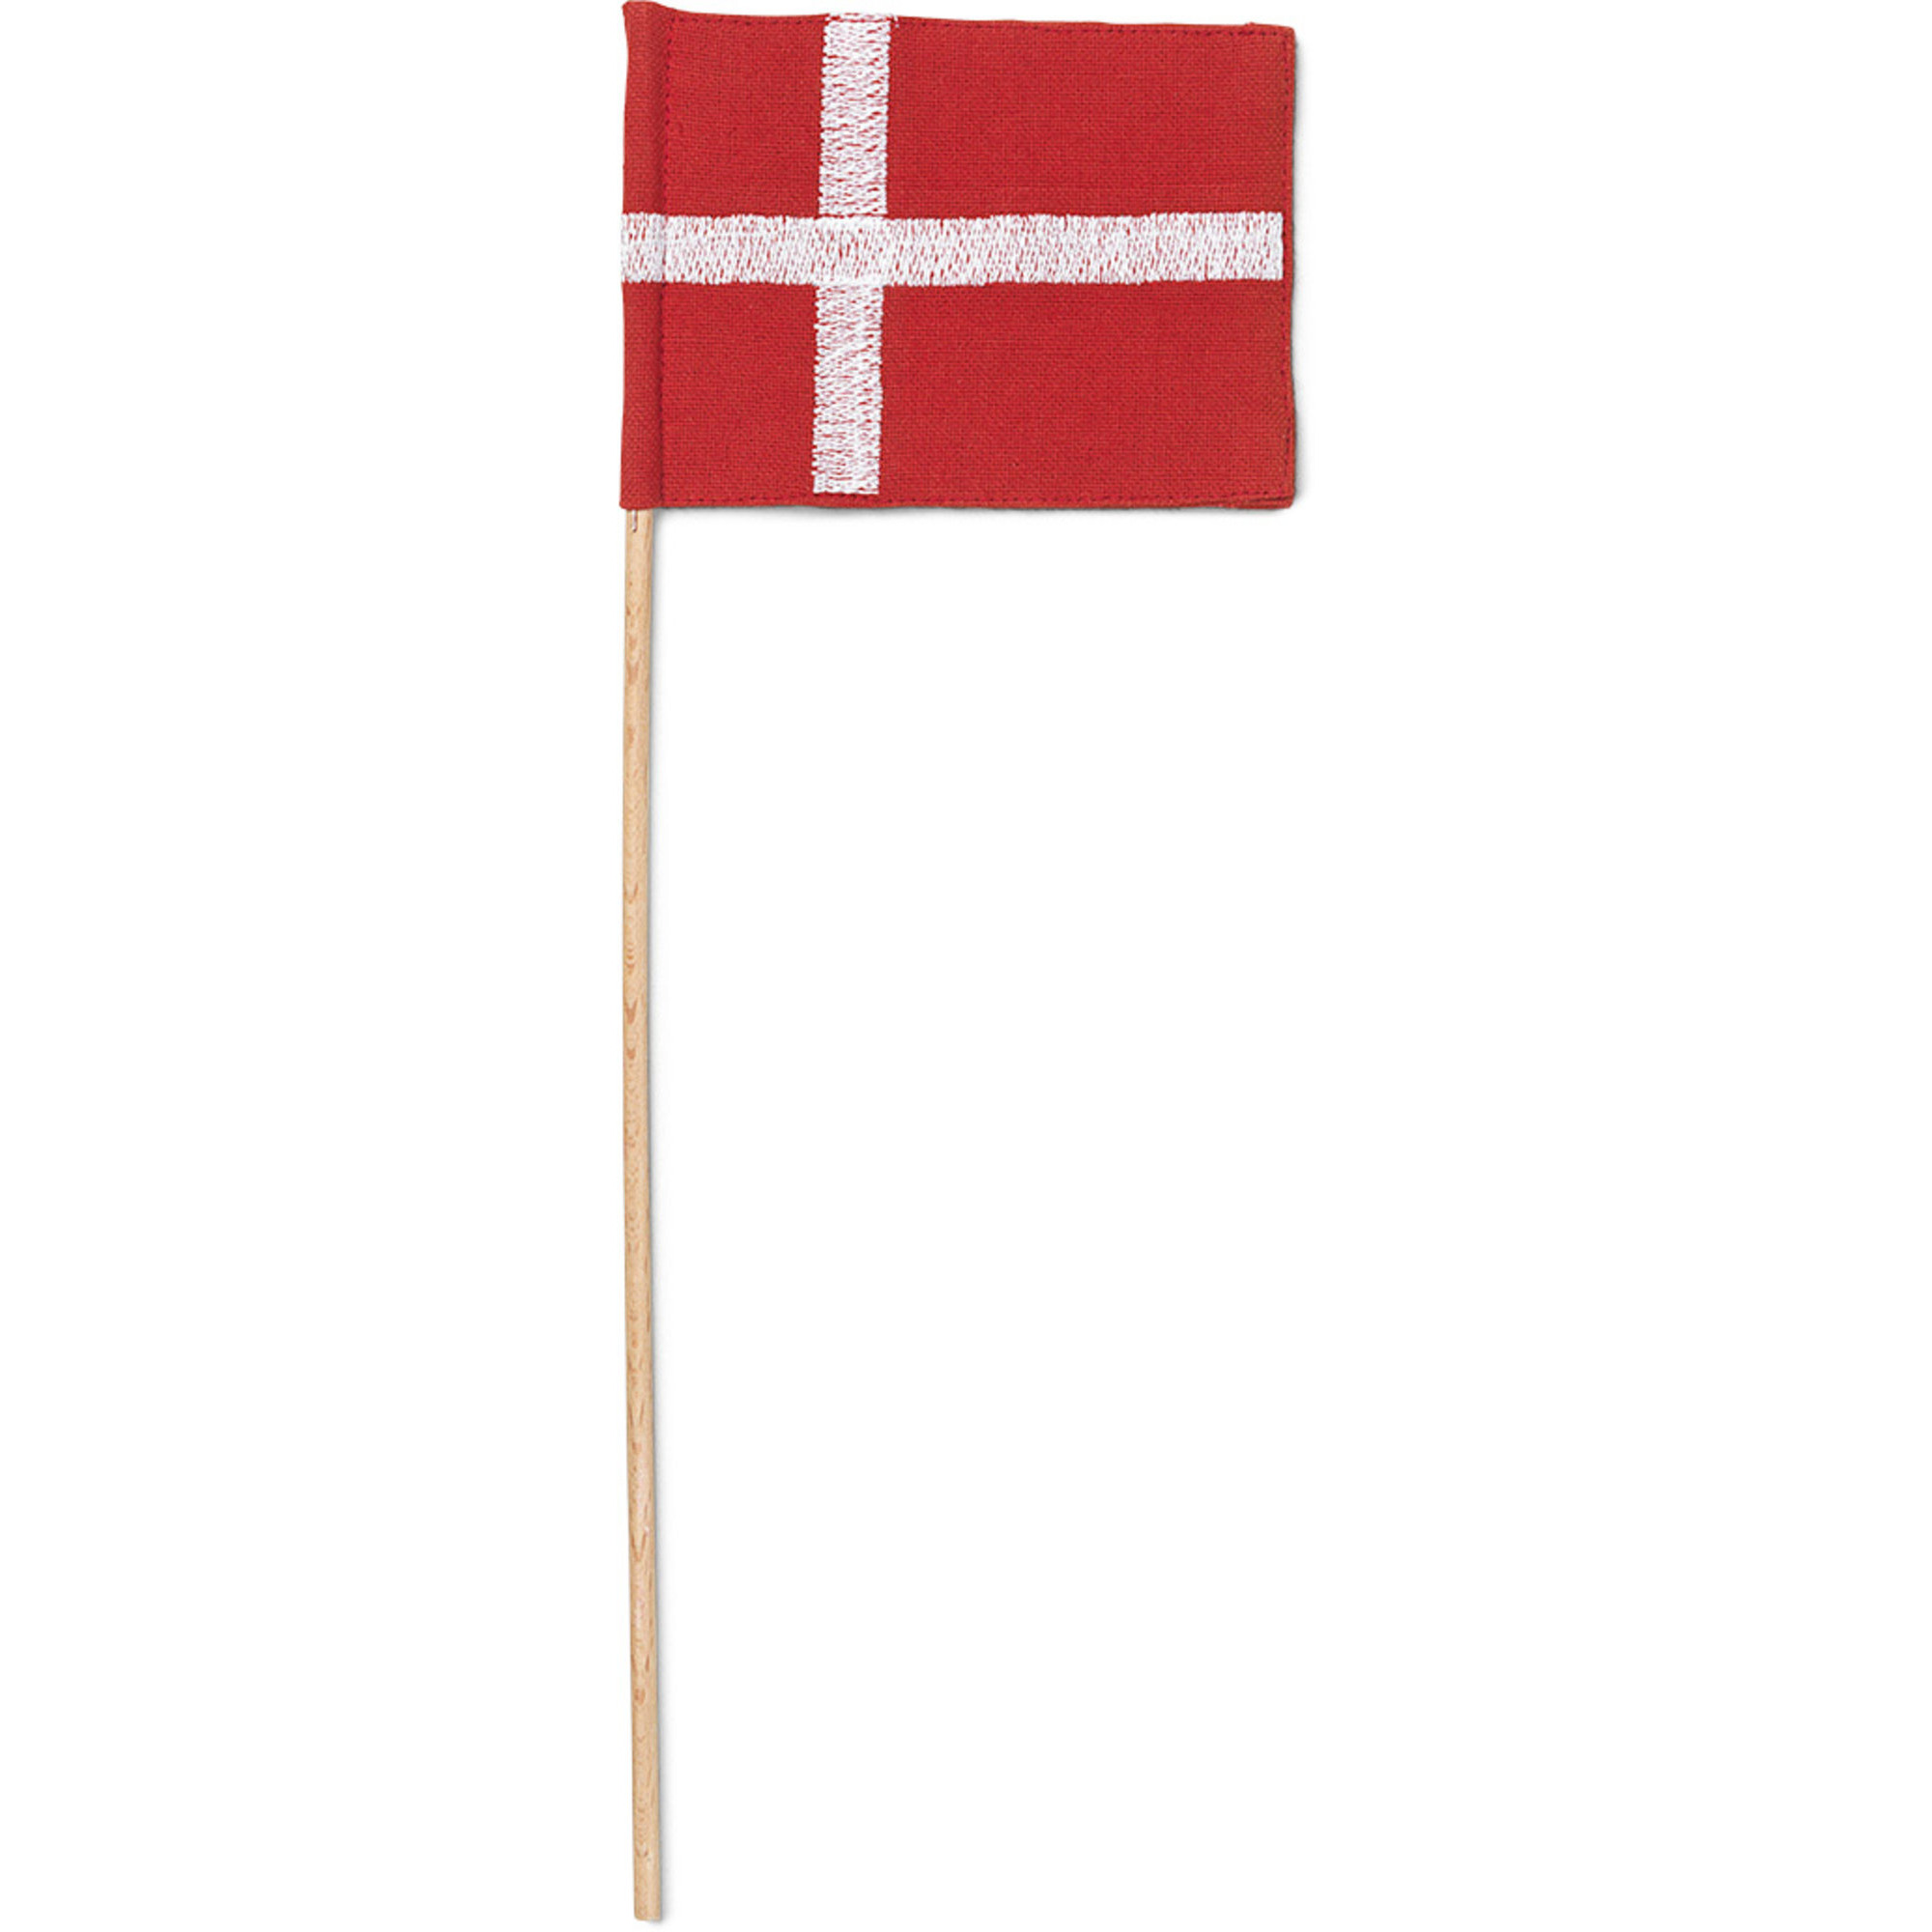 Kay Bojesen Tekstilflag til garder